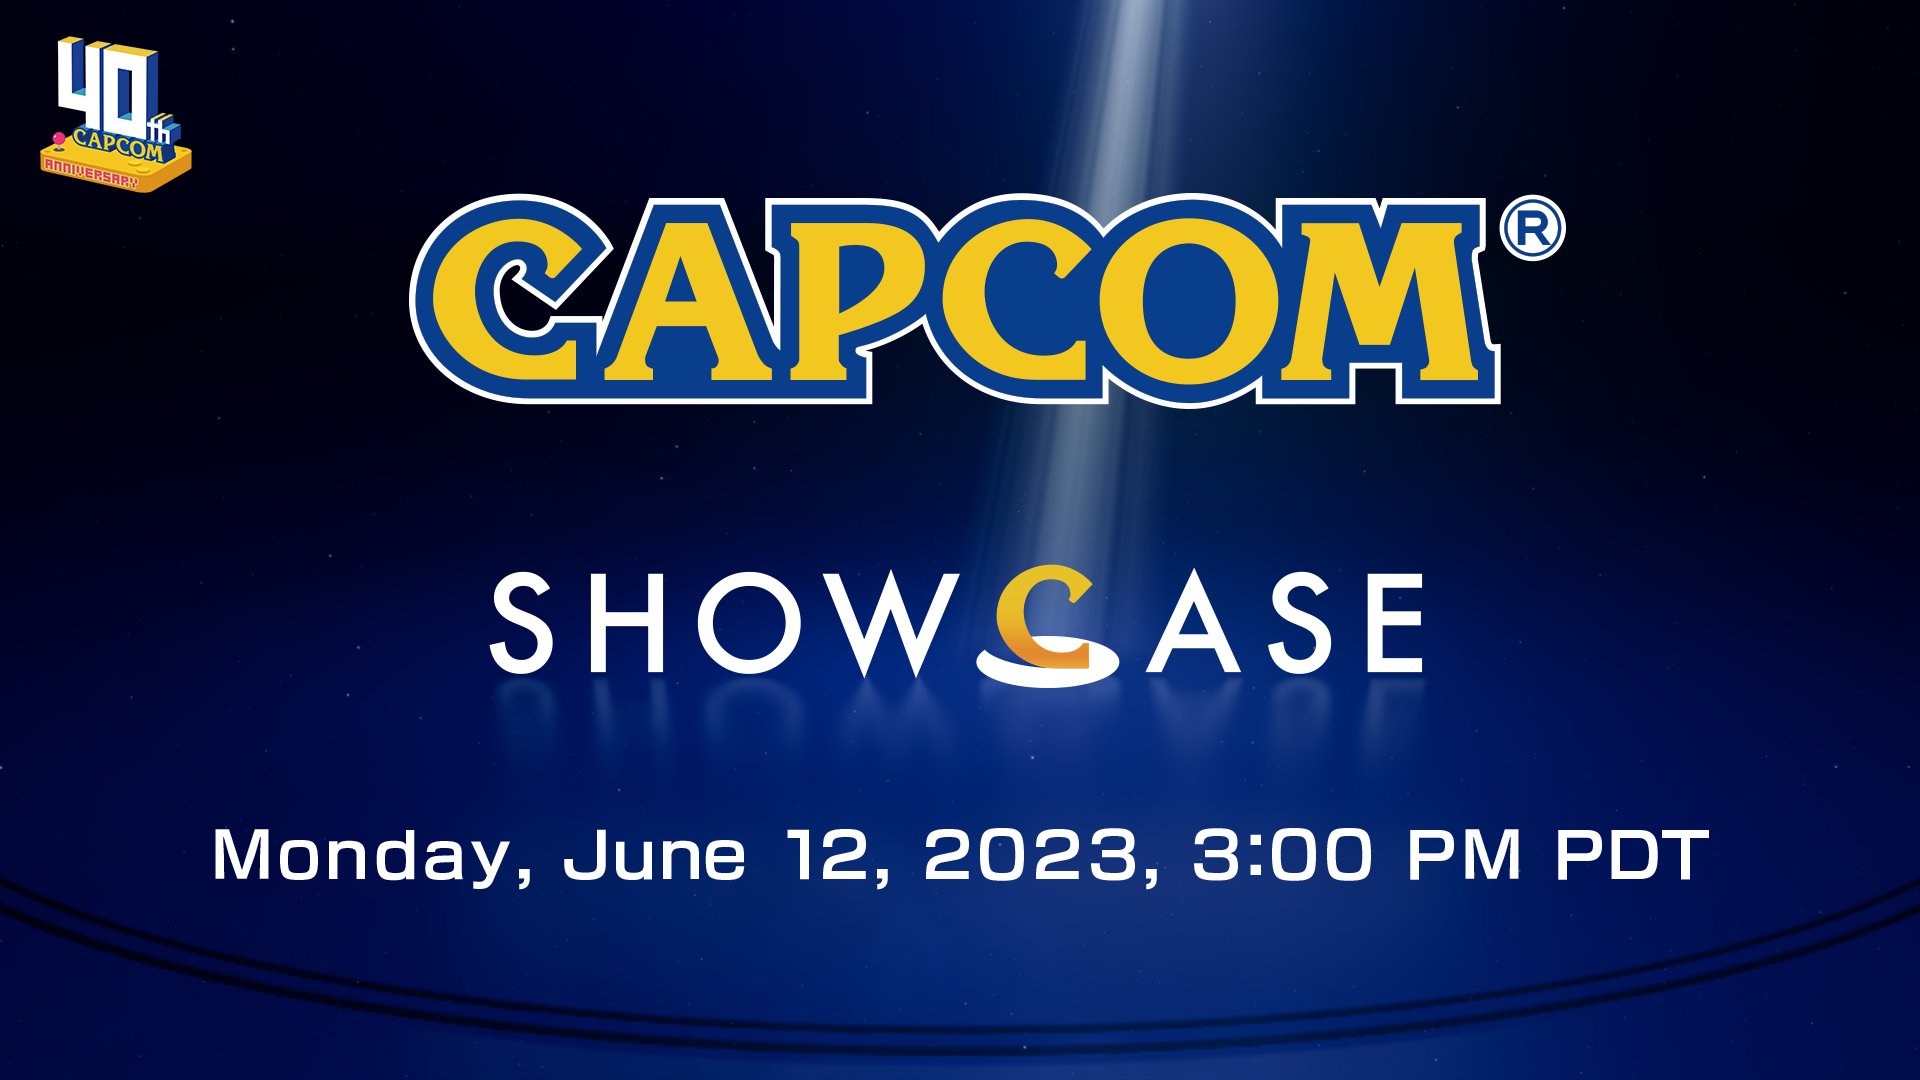 Capcom Showcase Announced for June 12